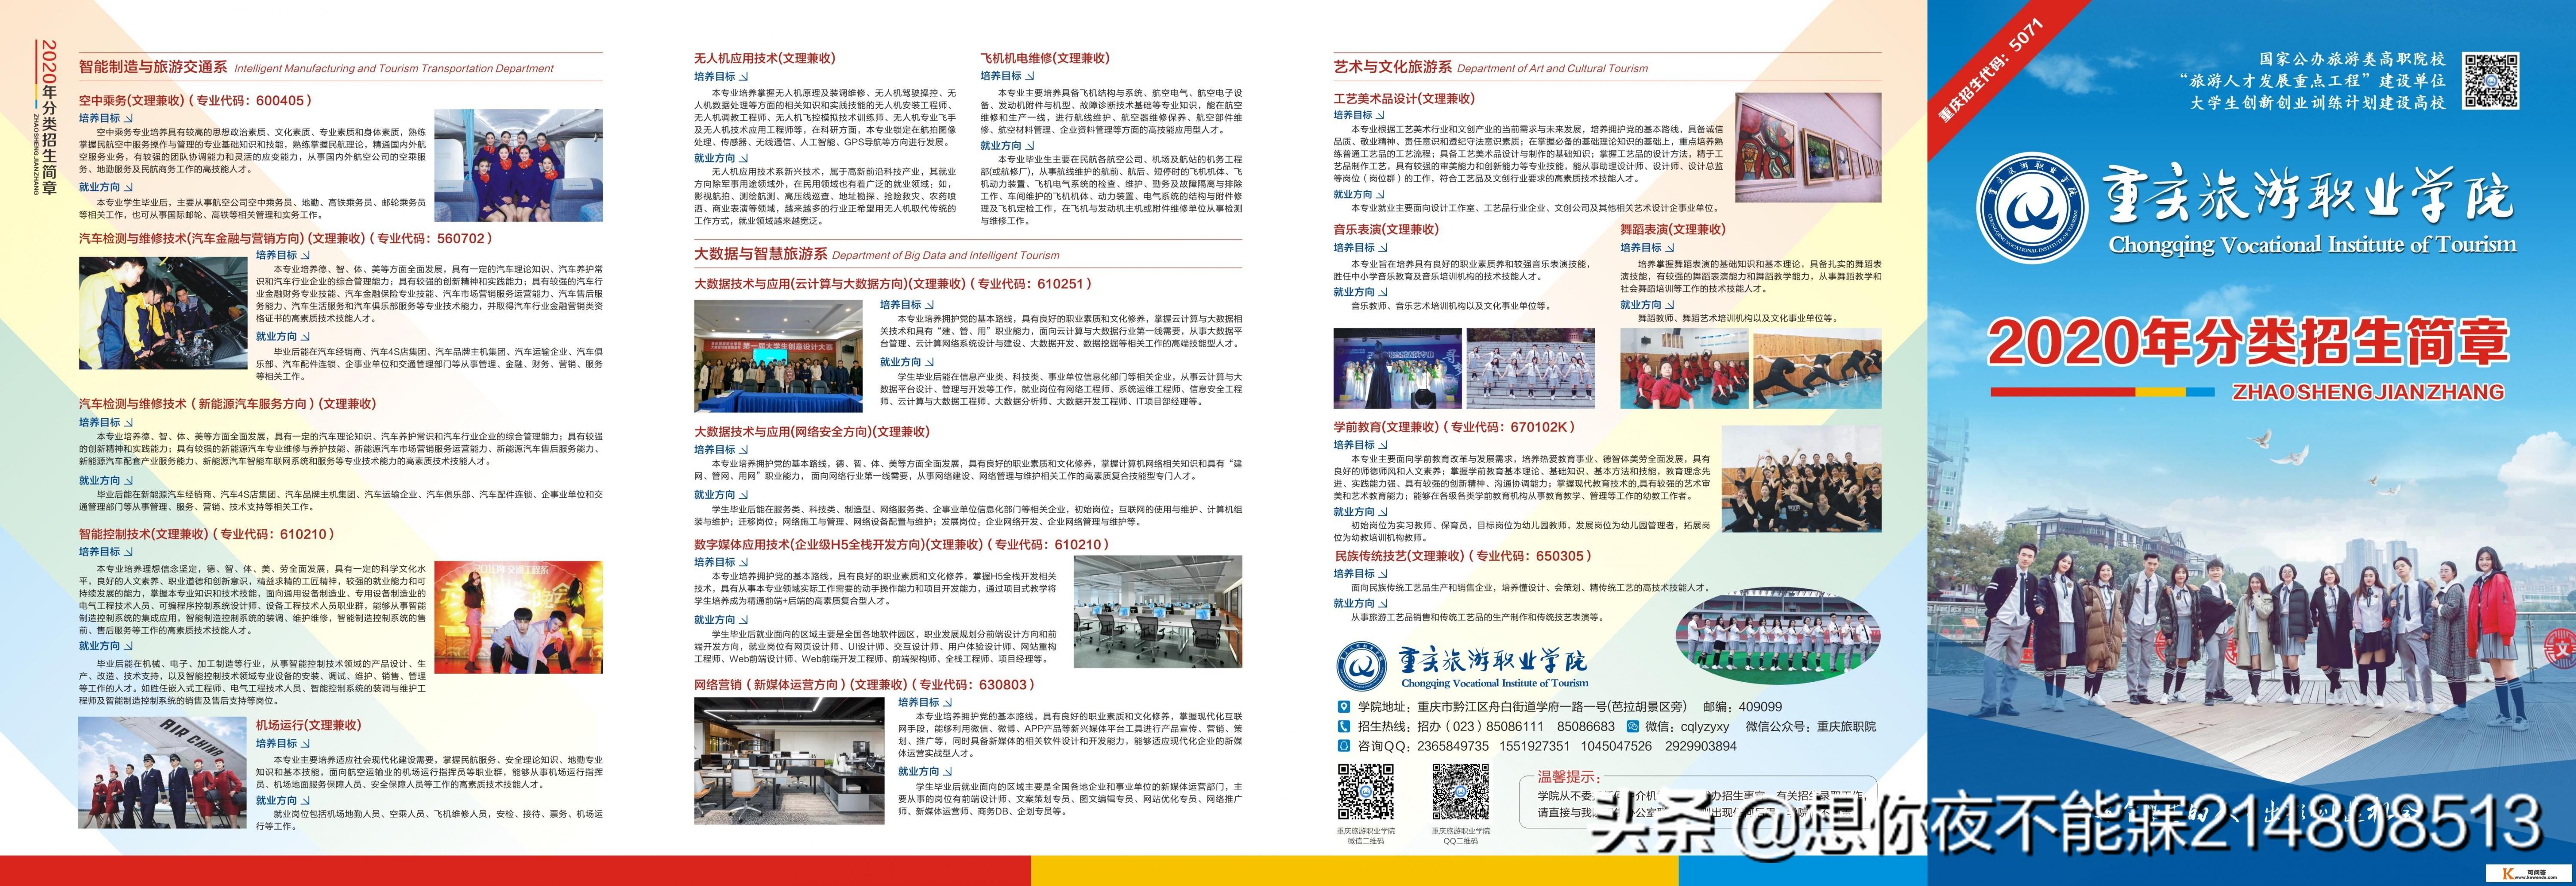 重庆旅游职业学院数字媒体应用技术(企业级H5全栈开发方向)专业介绍？